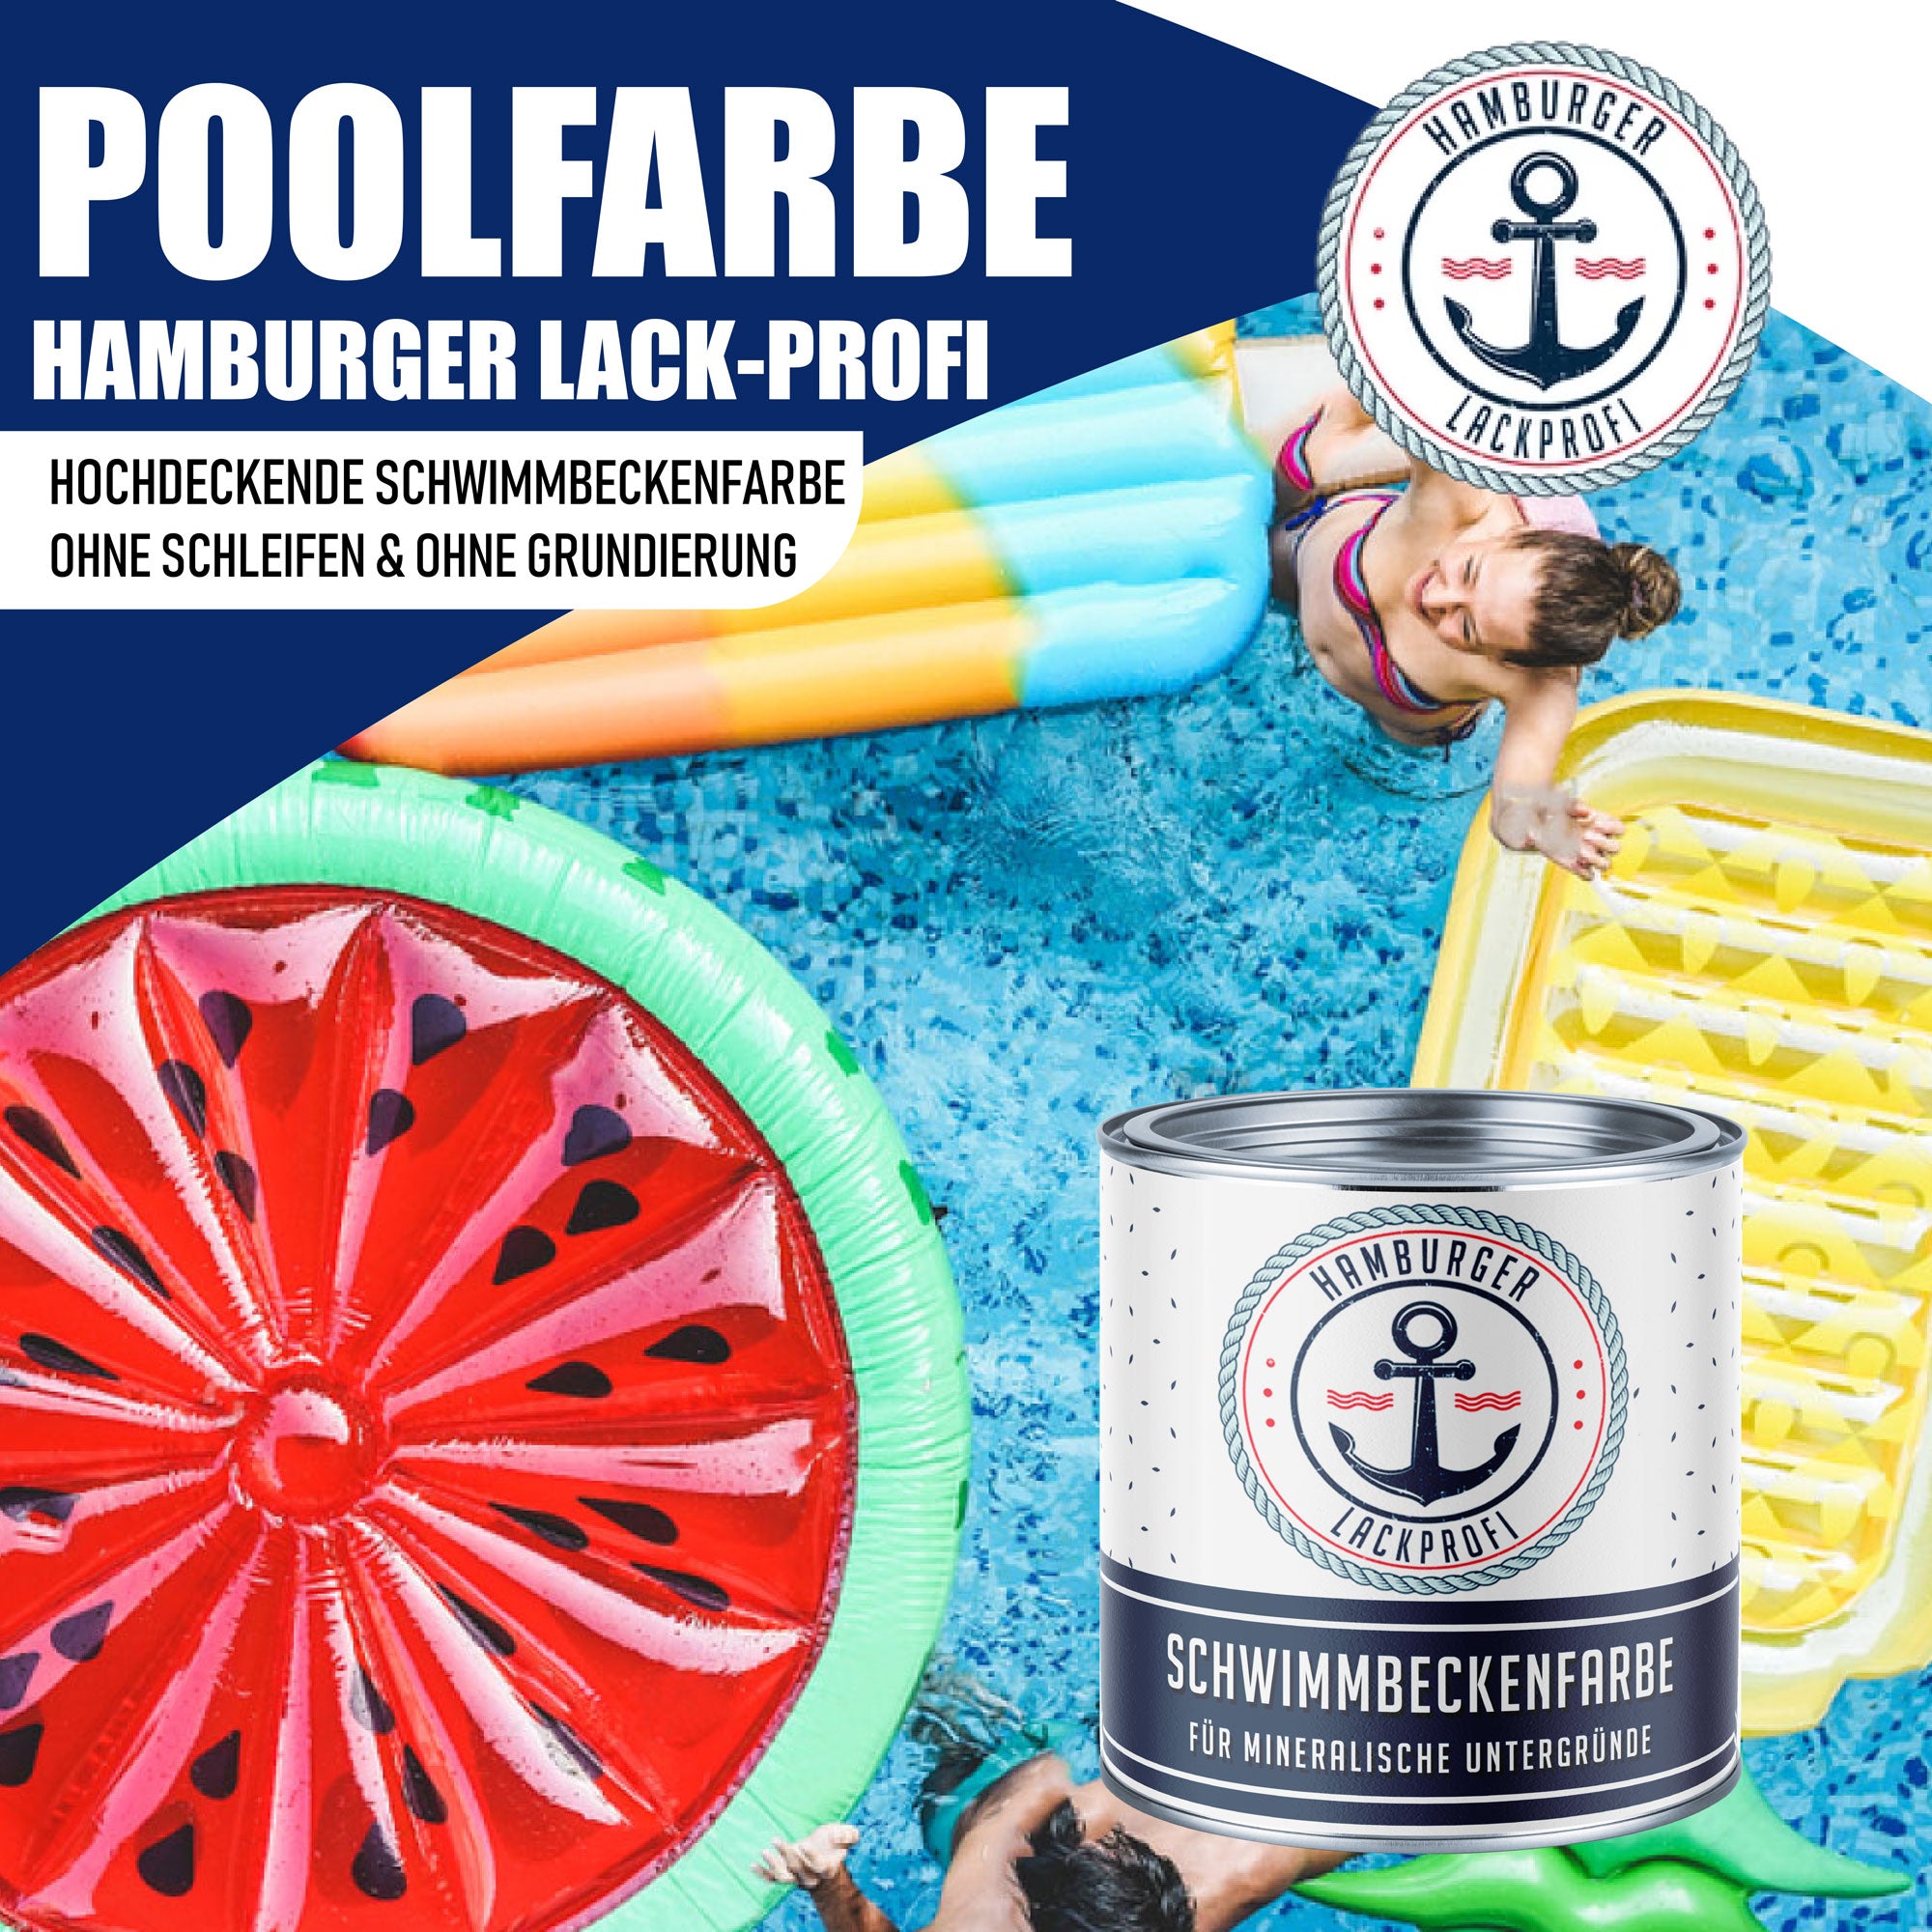 Hamburger Lack-Profi Schwimmbeckenfarbe Telemagenta RAL 4010 - hochdeckende Poolfarbe